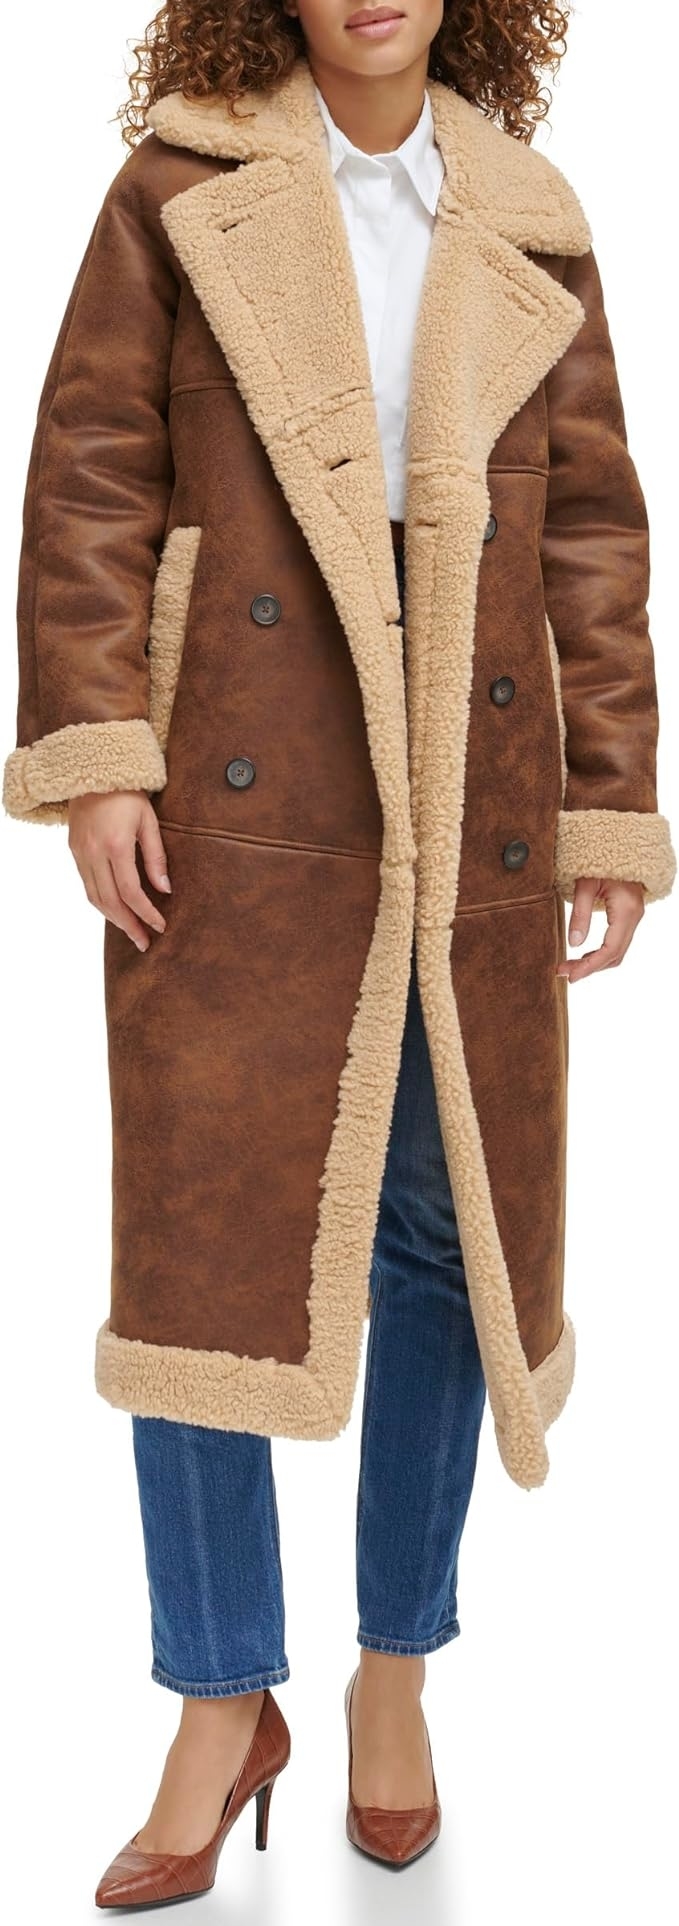 model in coat